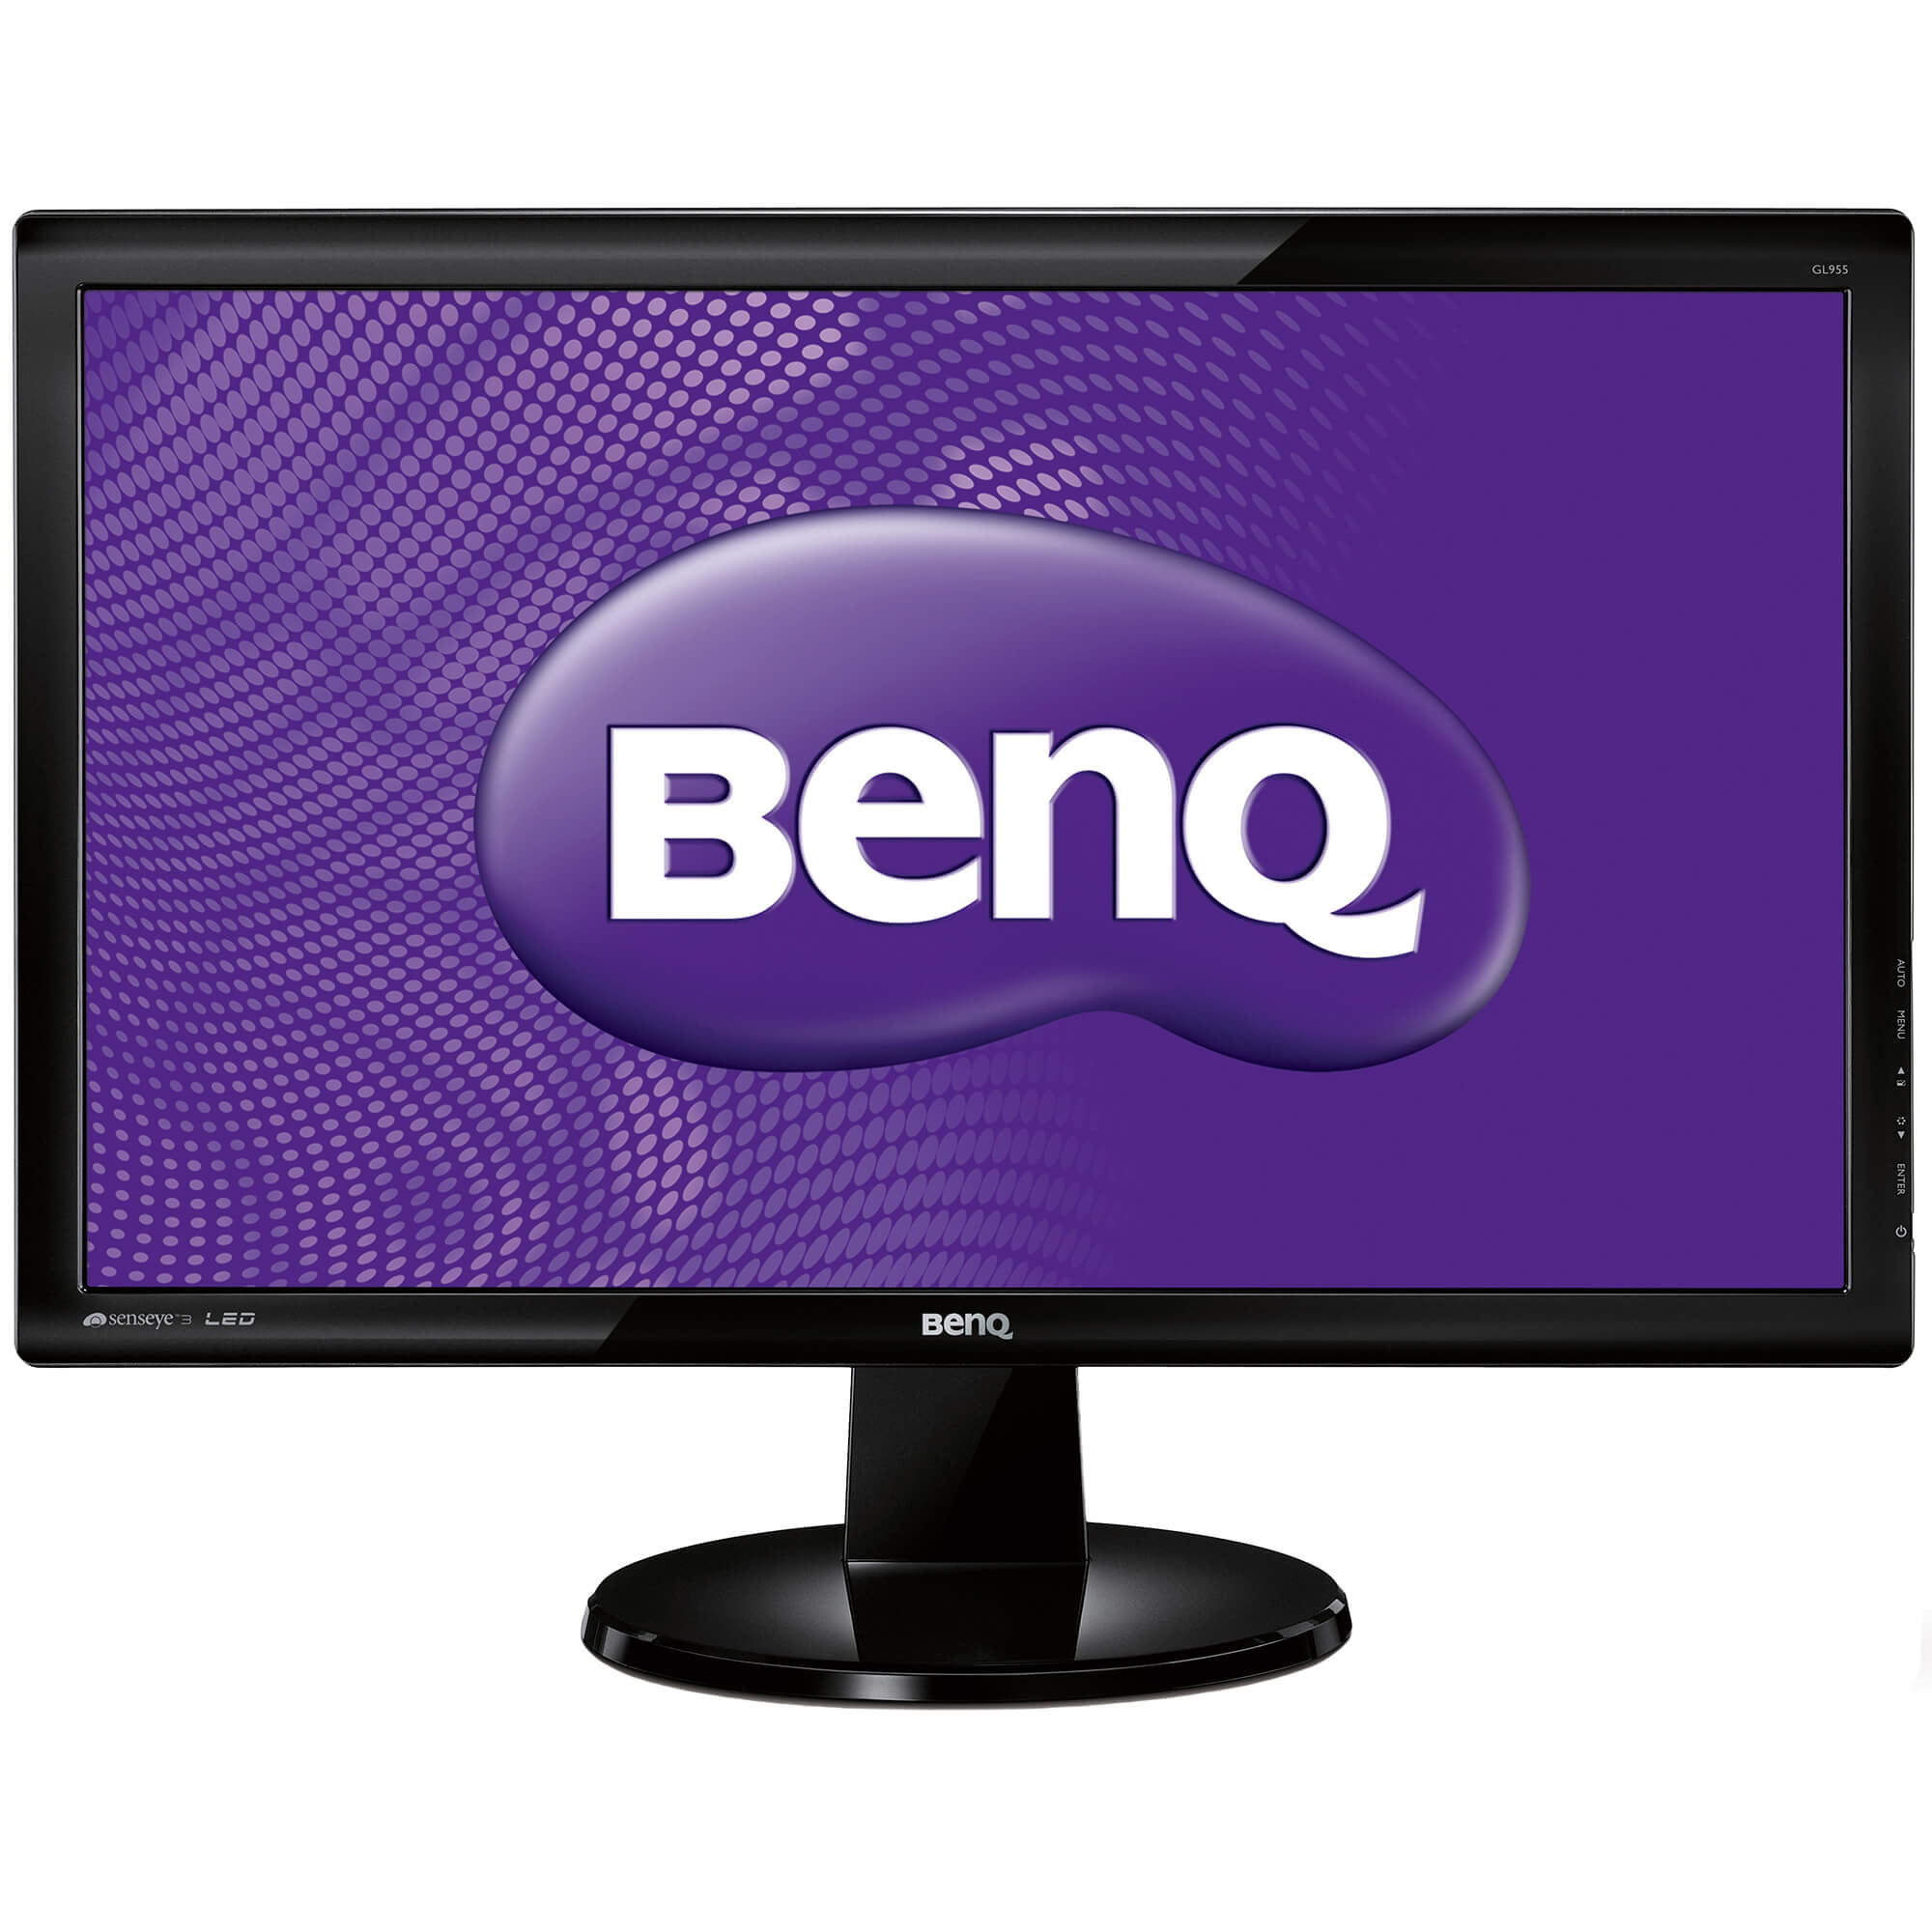  Monitor LED Benq GL955A 18.5", HD 